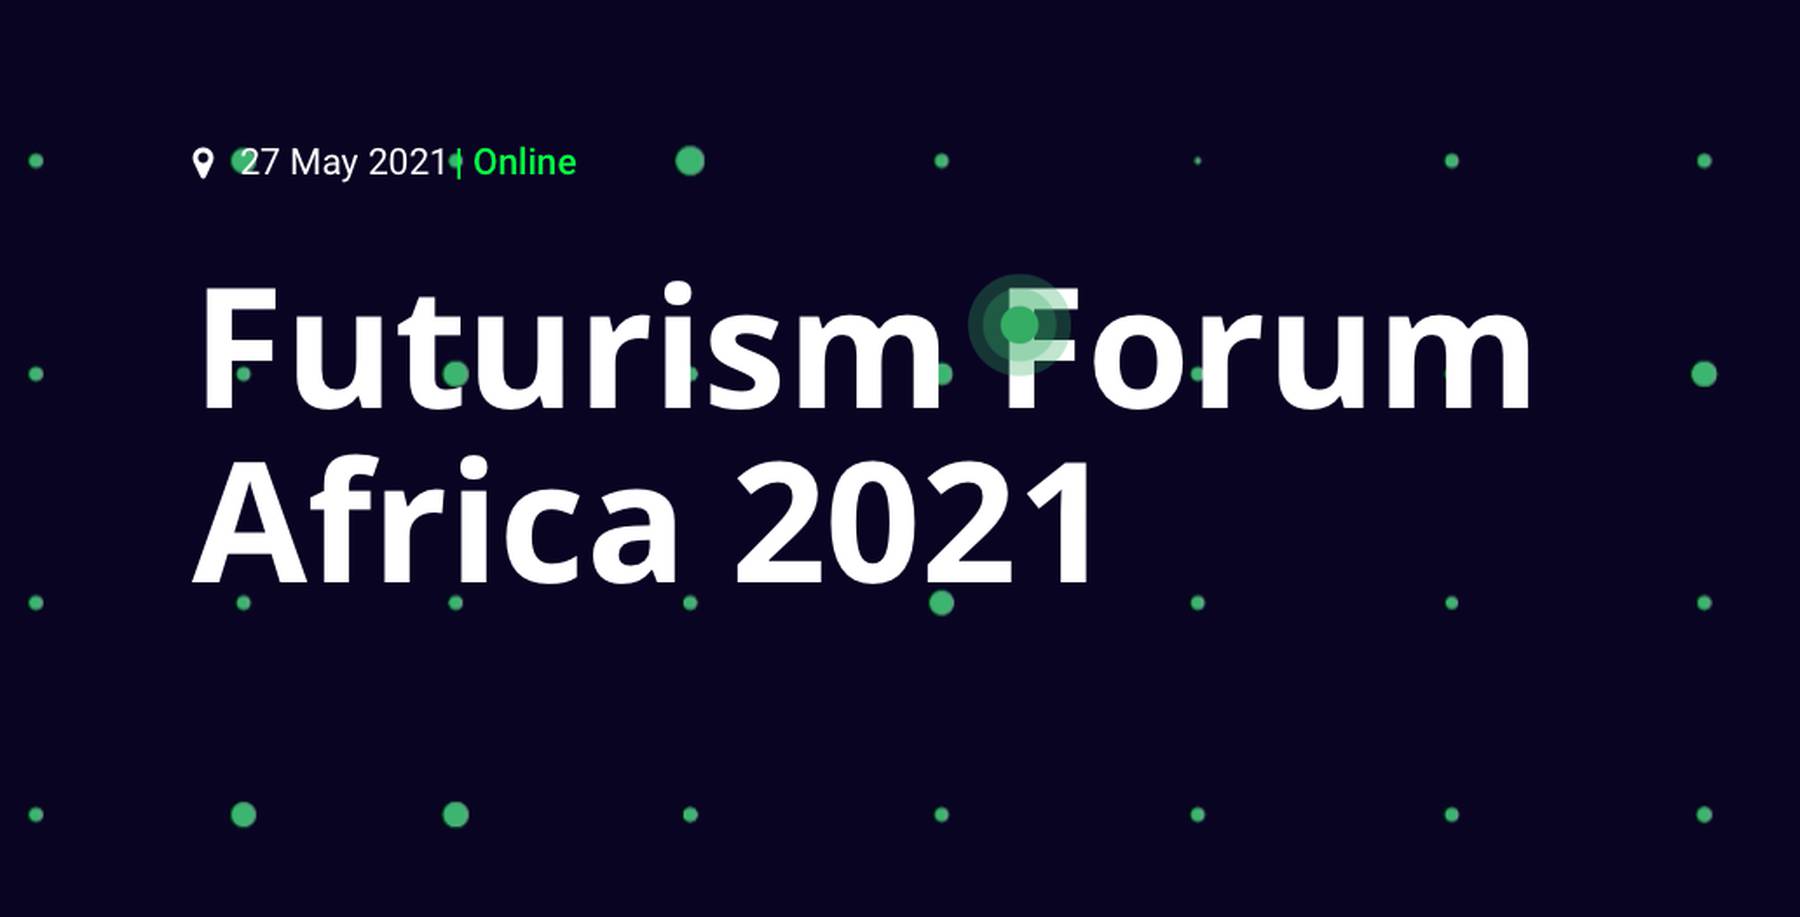 Futurism Forum Africa 2021